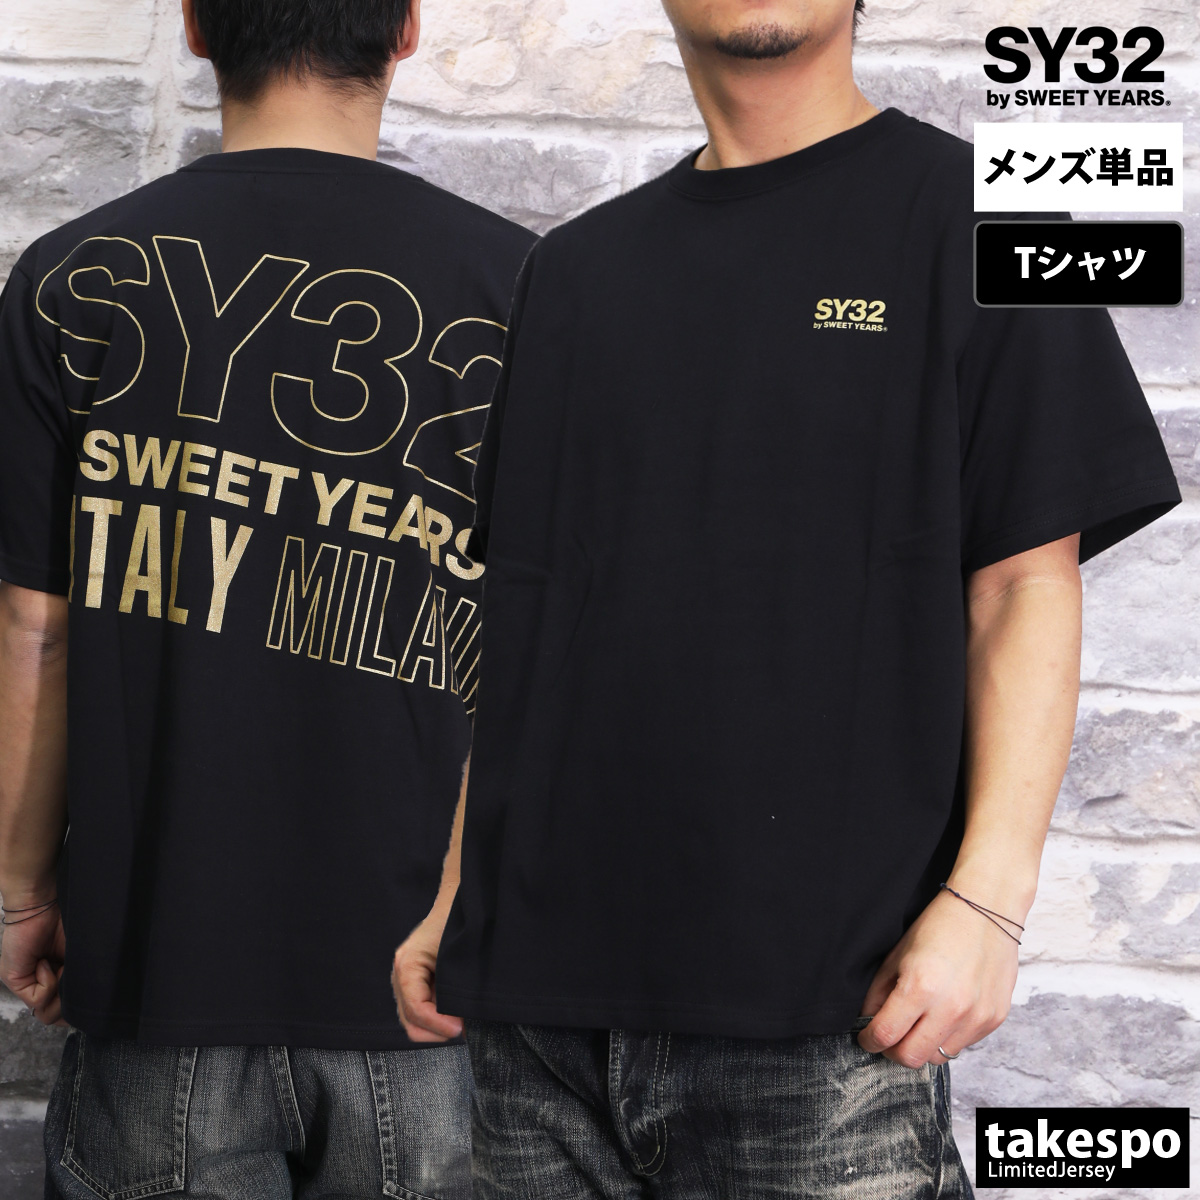 スウィートイヤーズ Tシャツ メンズ 上 SY32 by SWEET YEARS バックプリント付き...